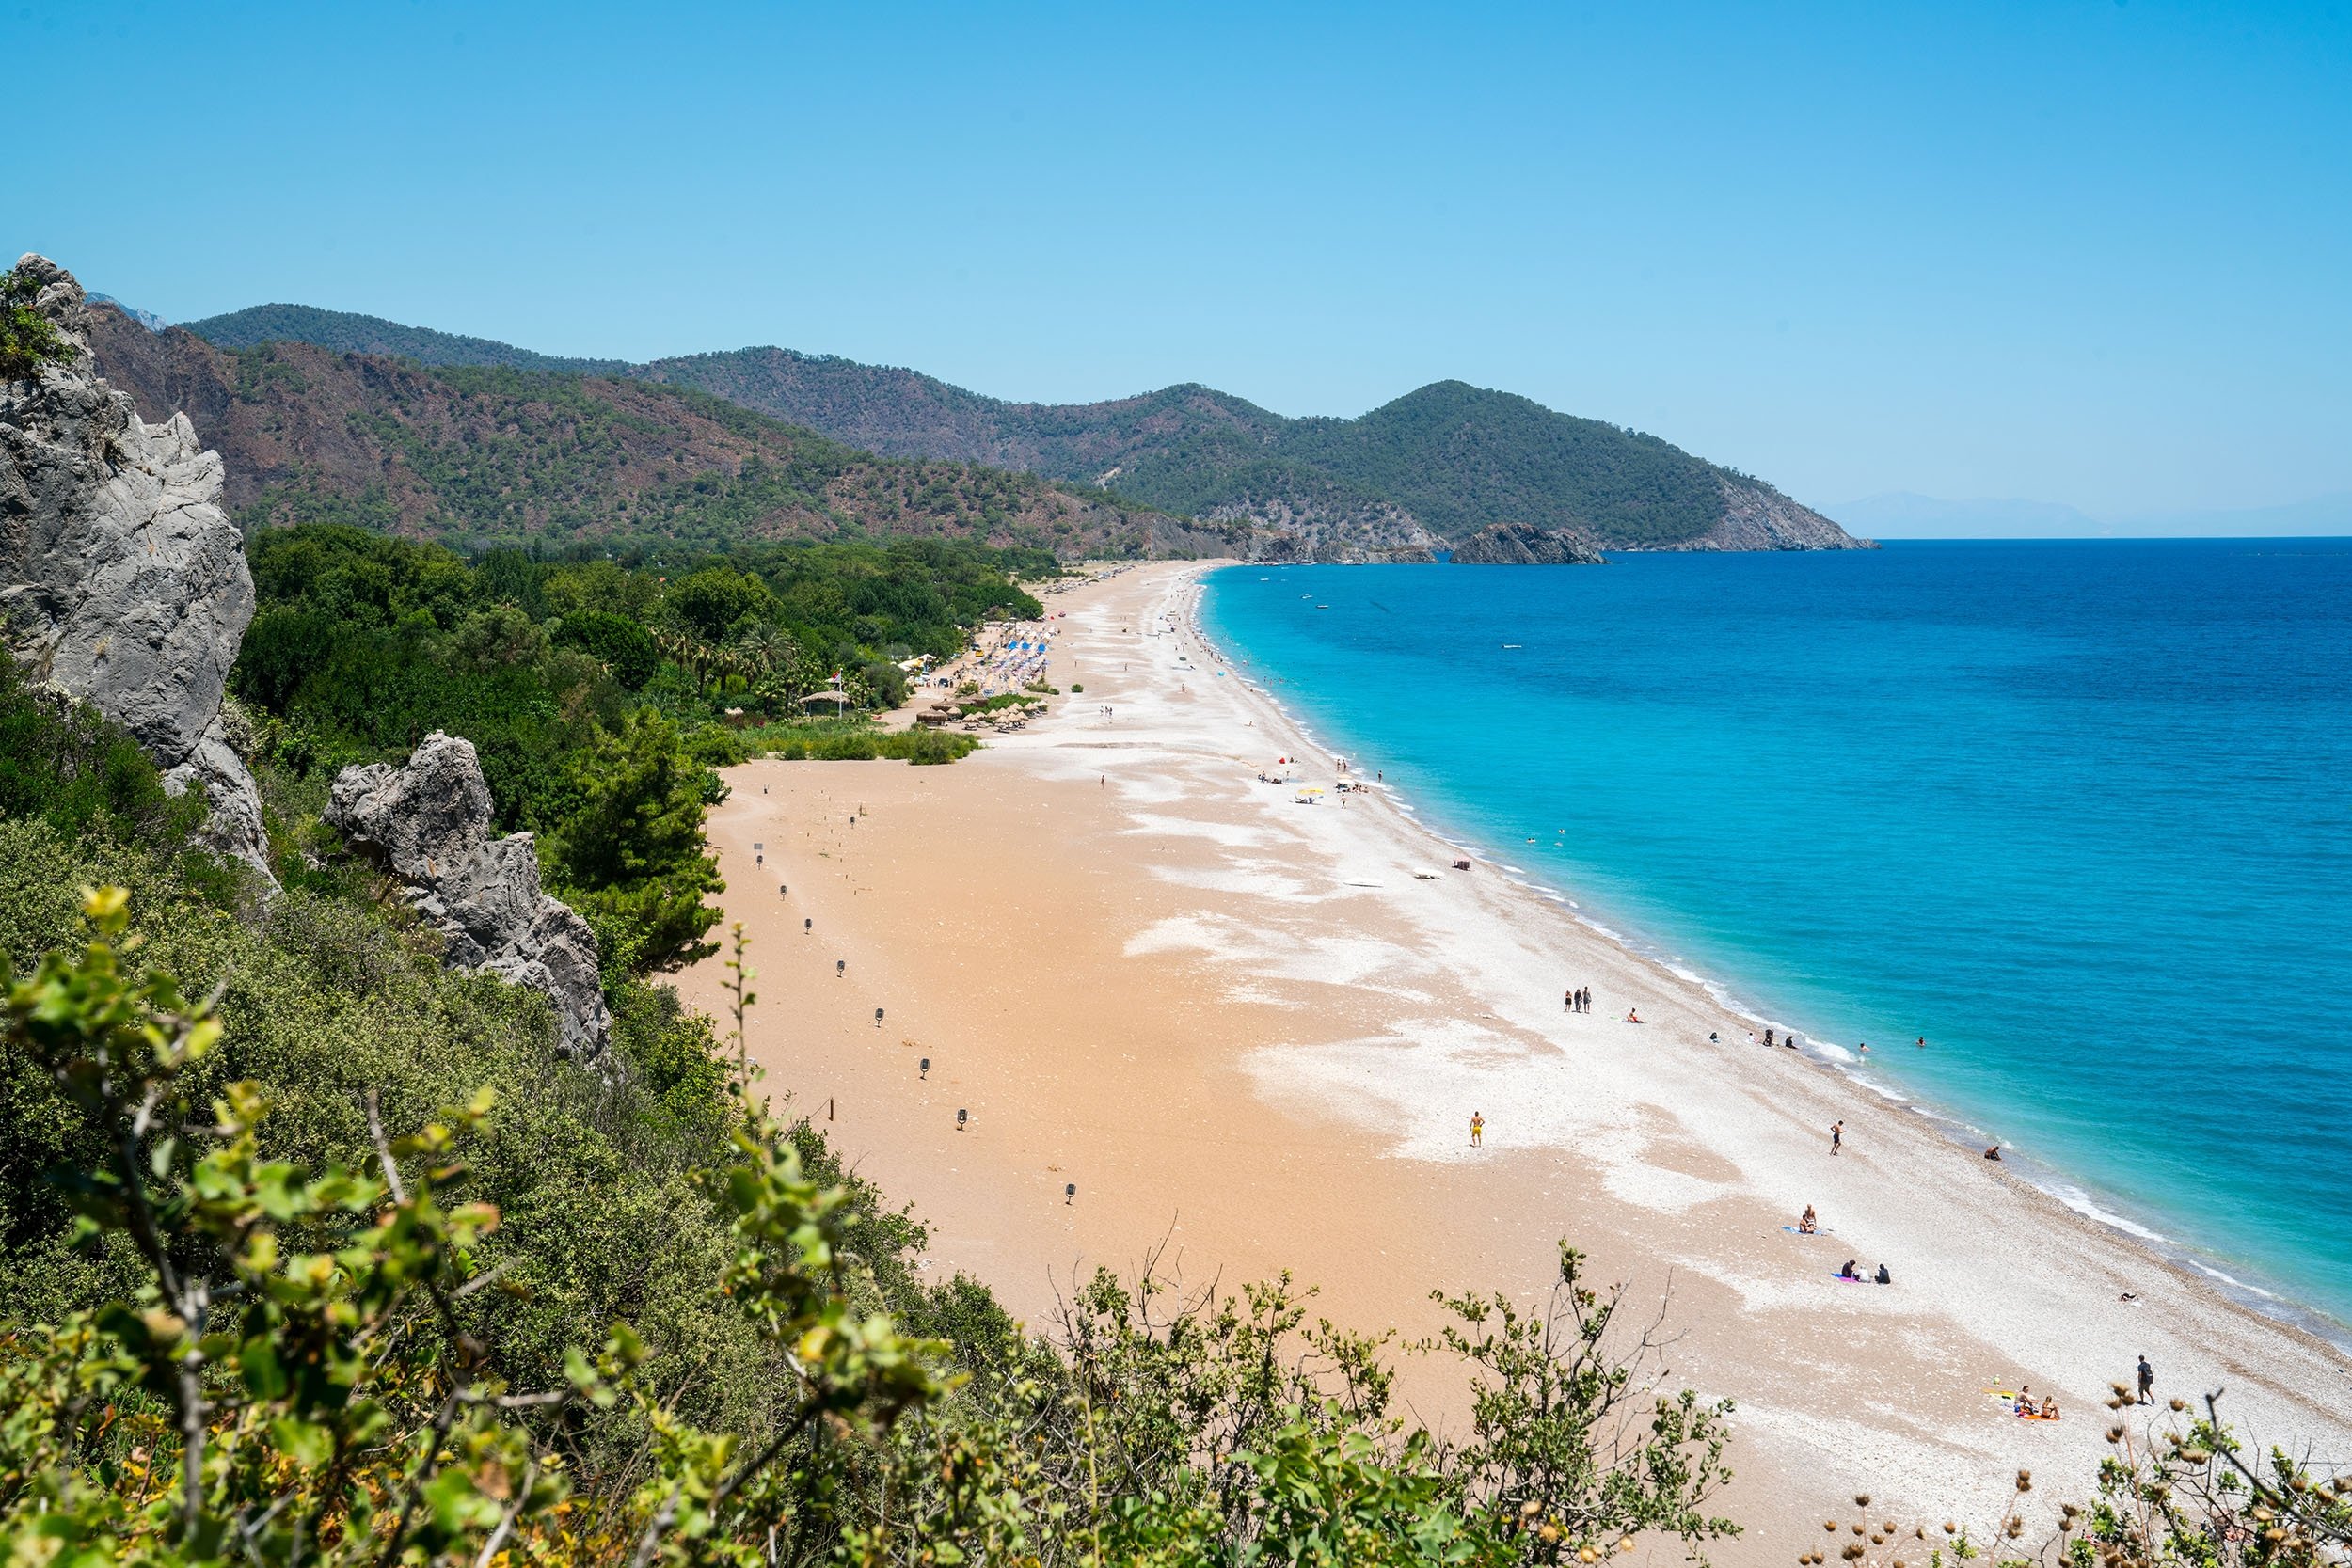 Turkey S 10 Hidden Beaches To Enjoy In Quiet Daily Sabah